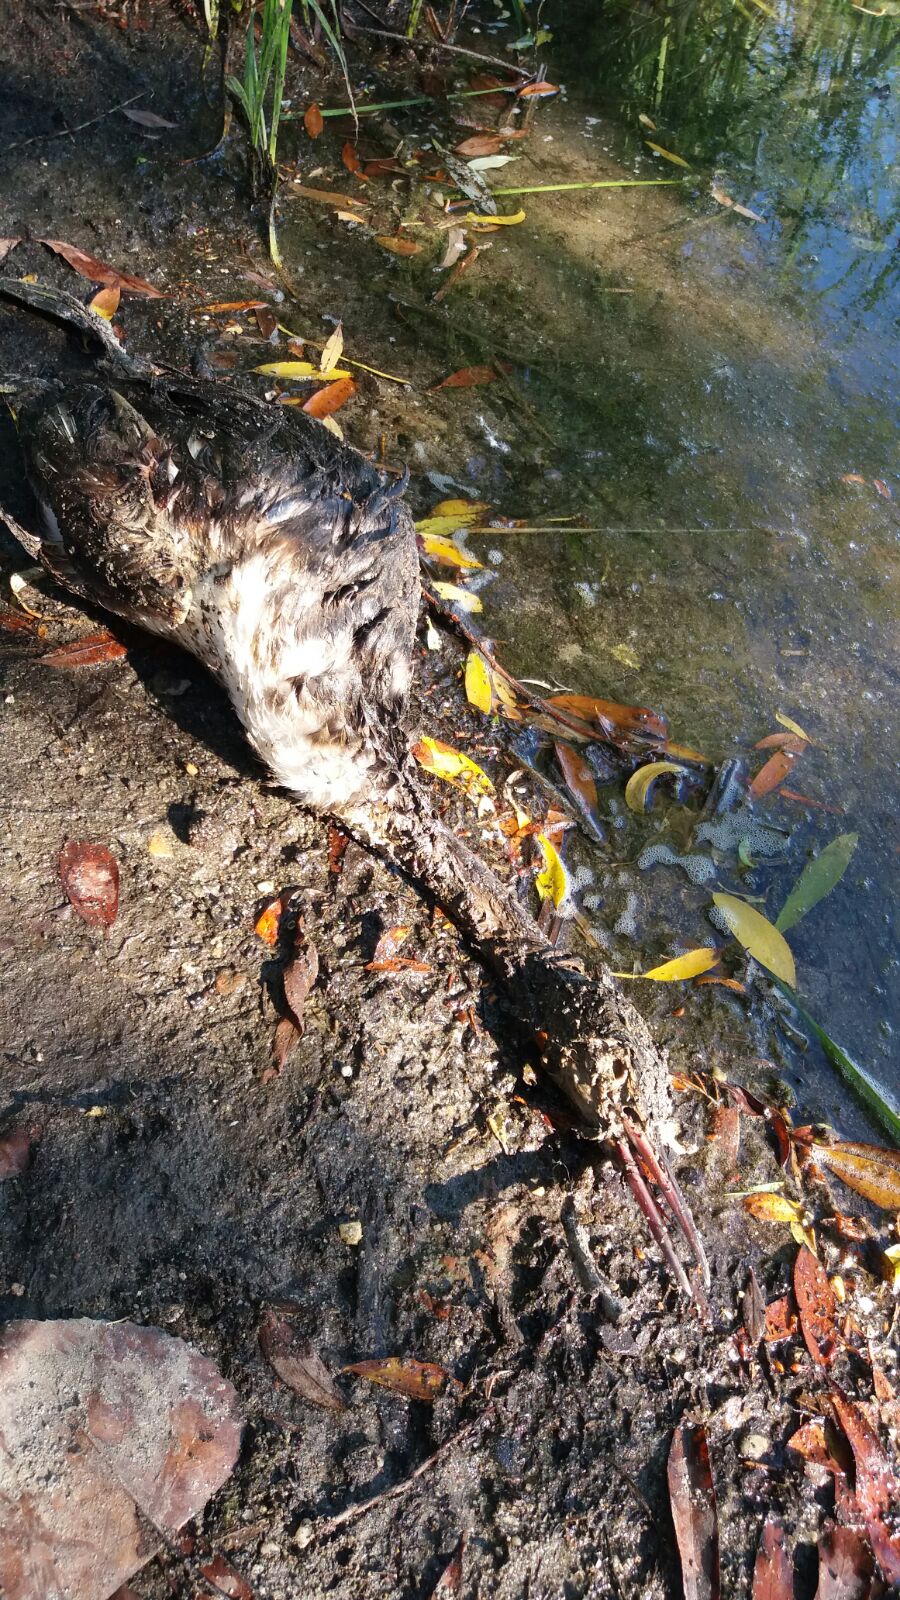 Moria di uccelli a Basiglio: il focolaio si estende. La Asl finalmente interviene